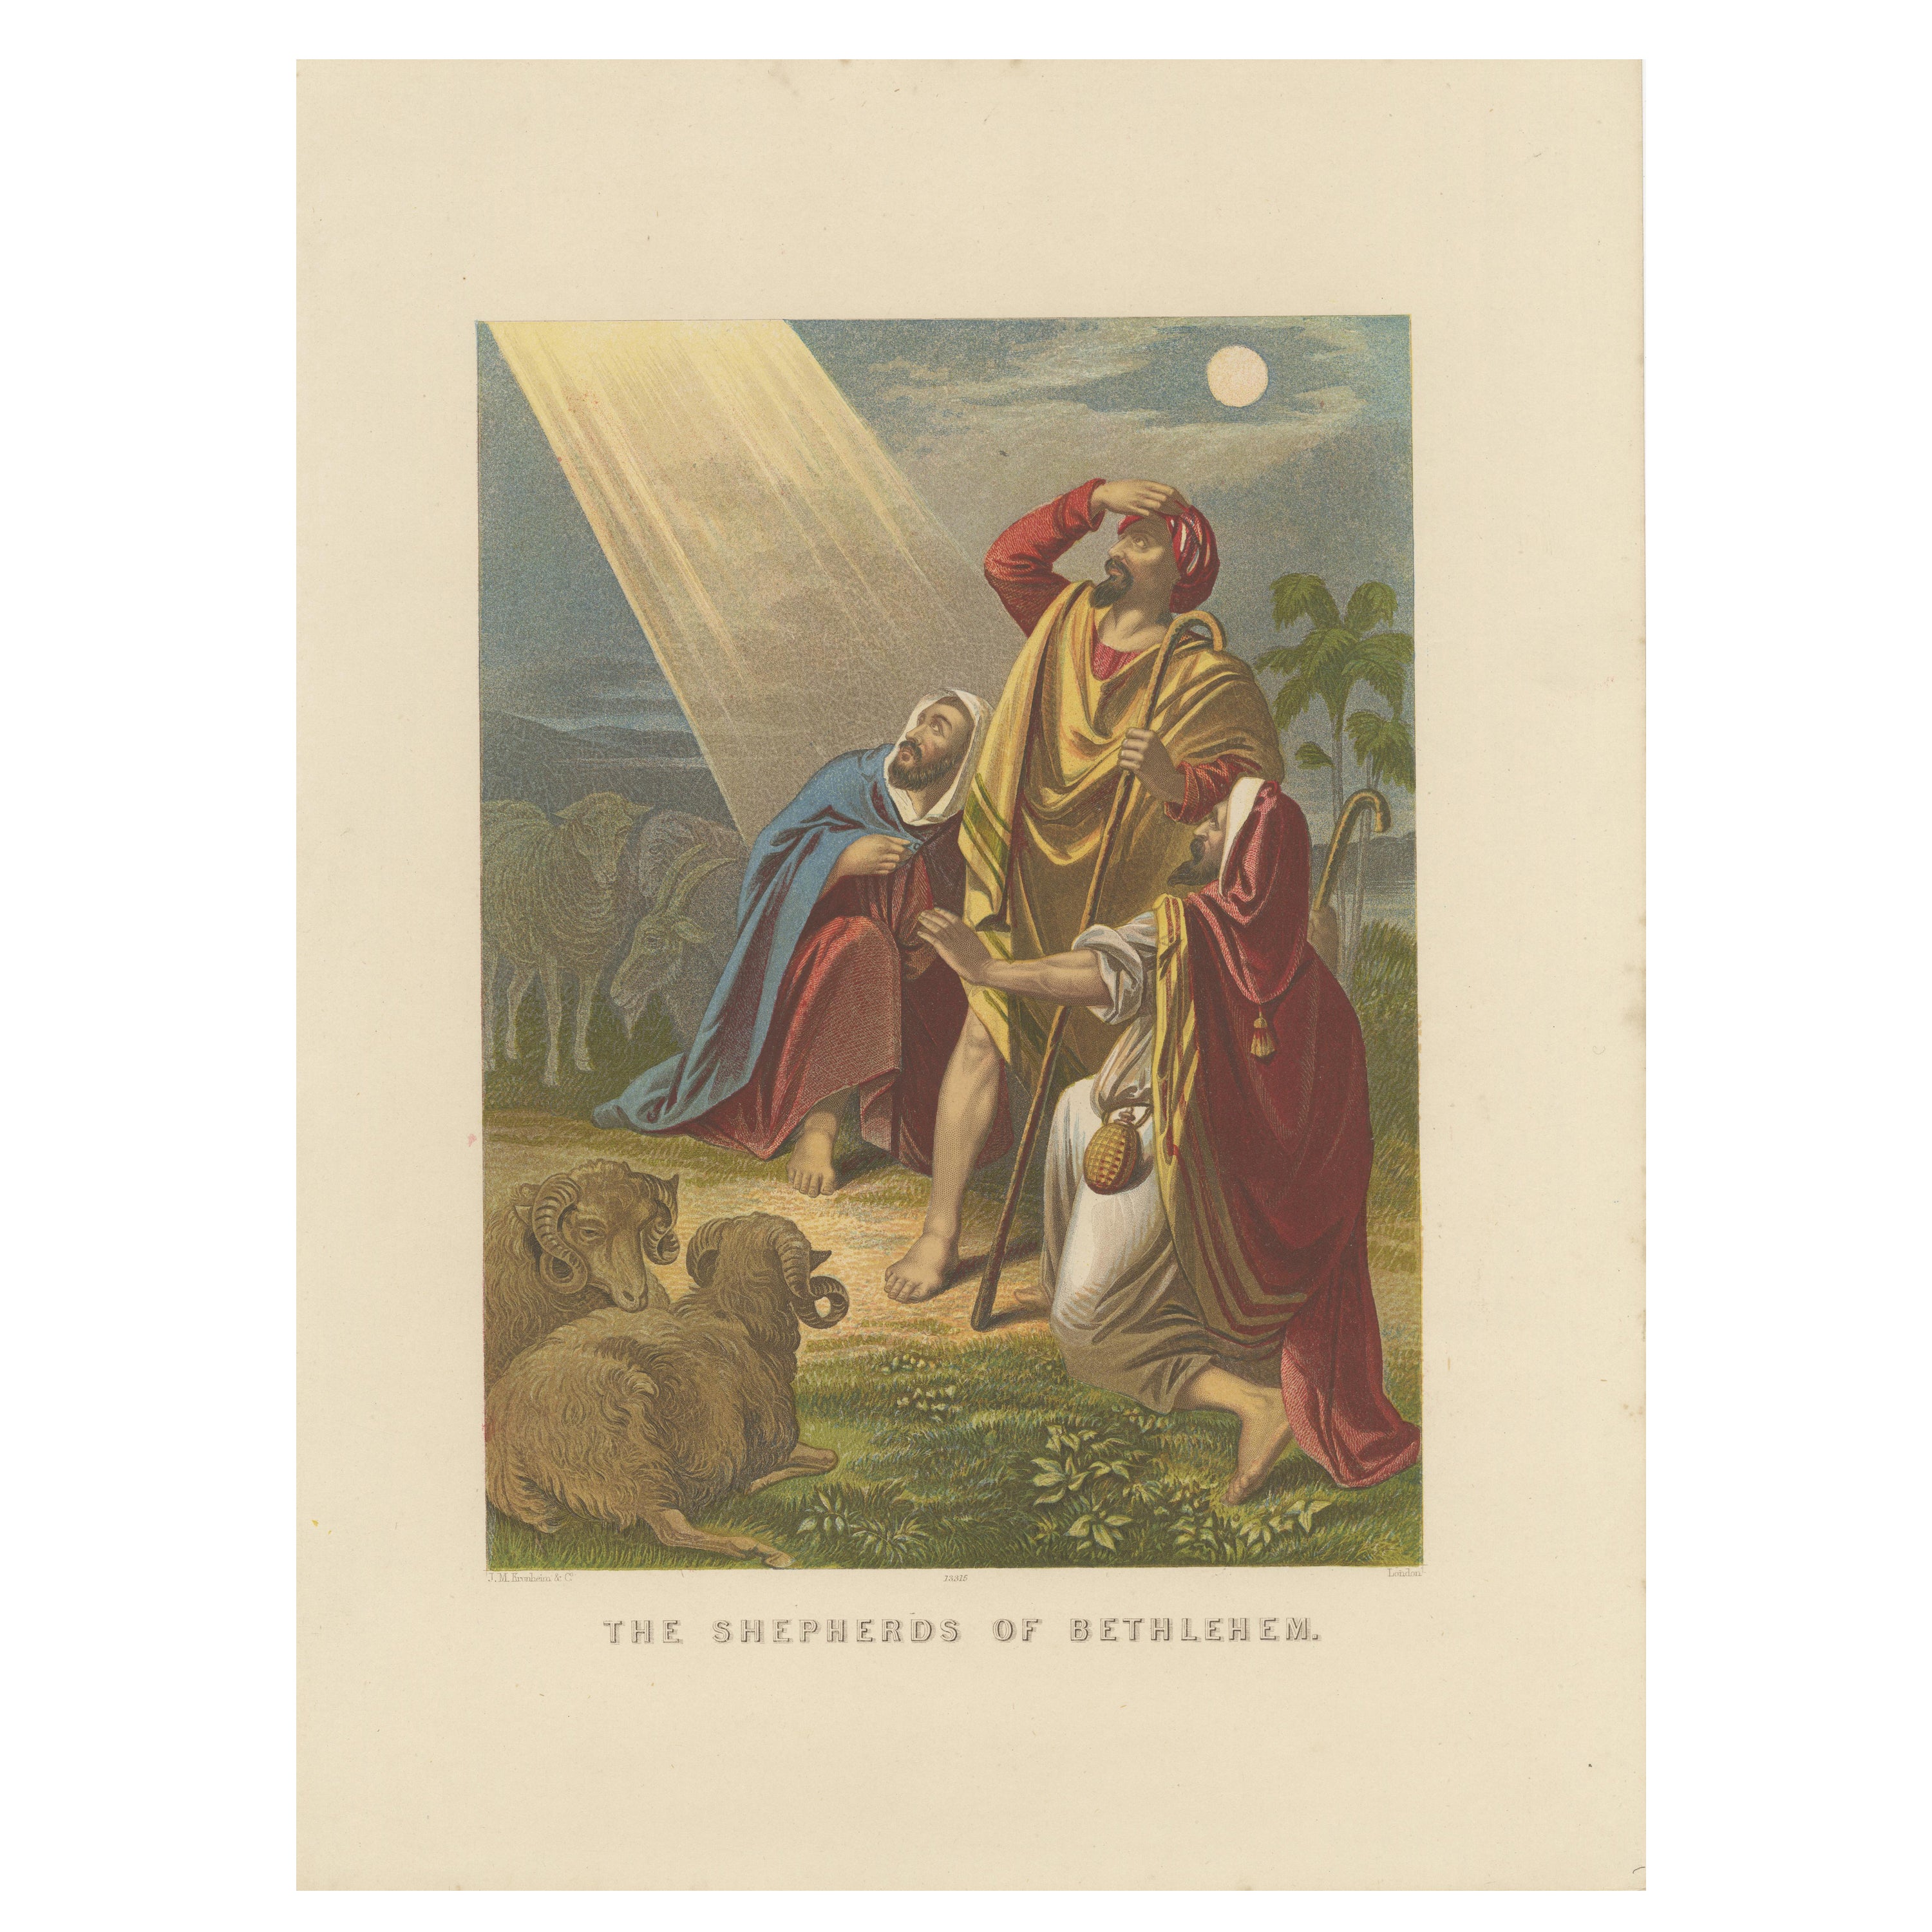 Impression biblique ancienne des bergers de Bethlehem par Kronheim, vers 1860